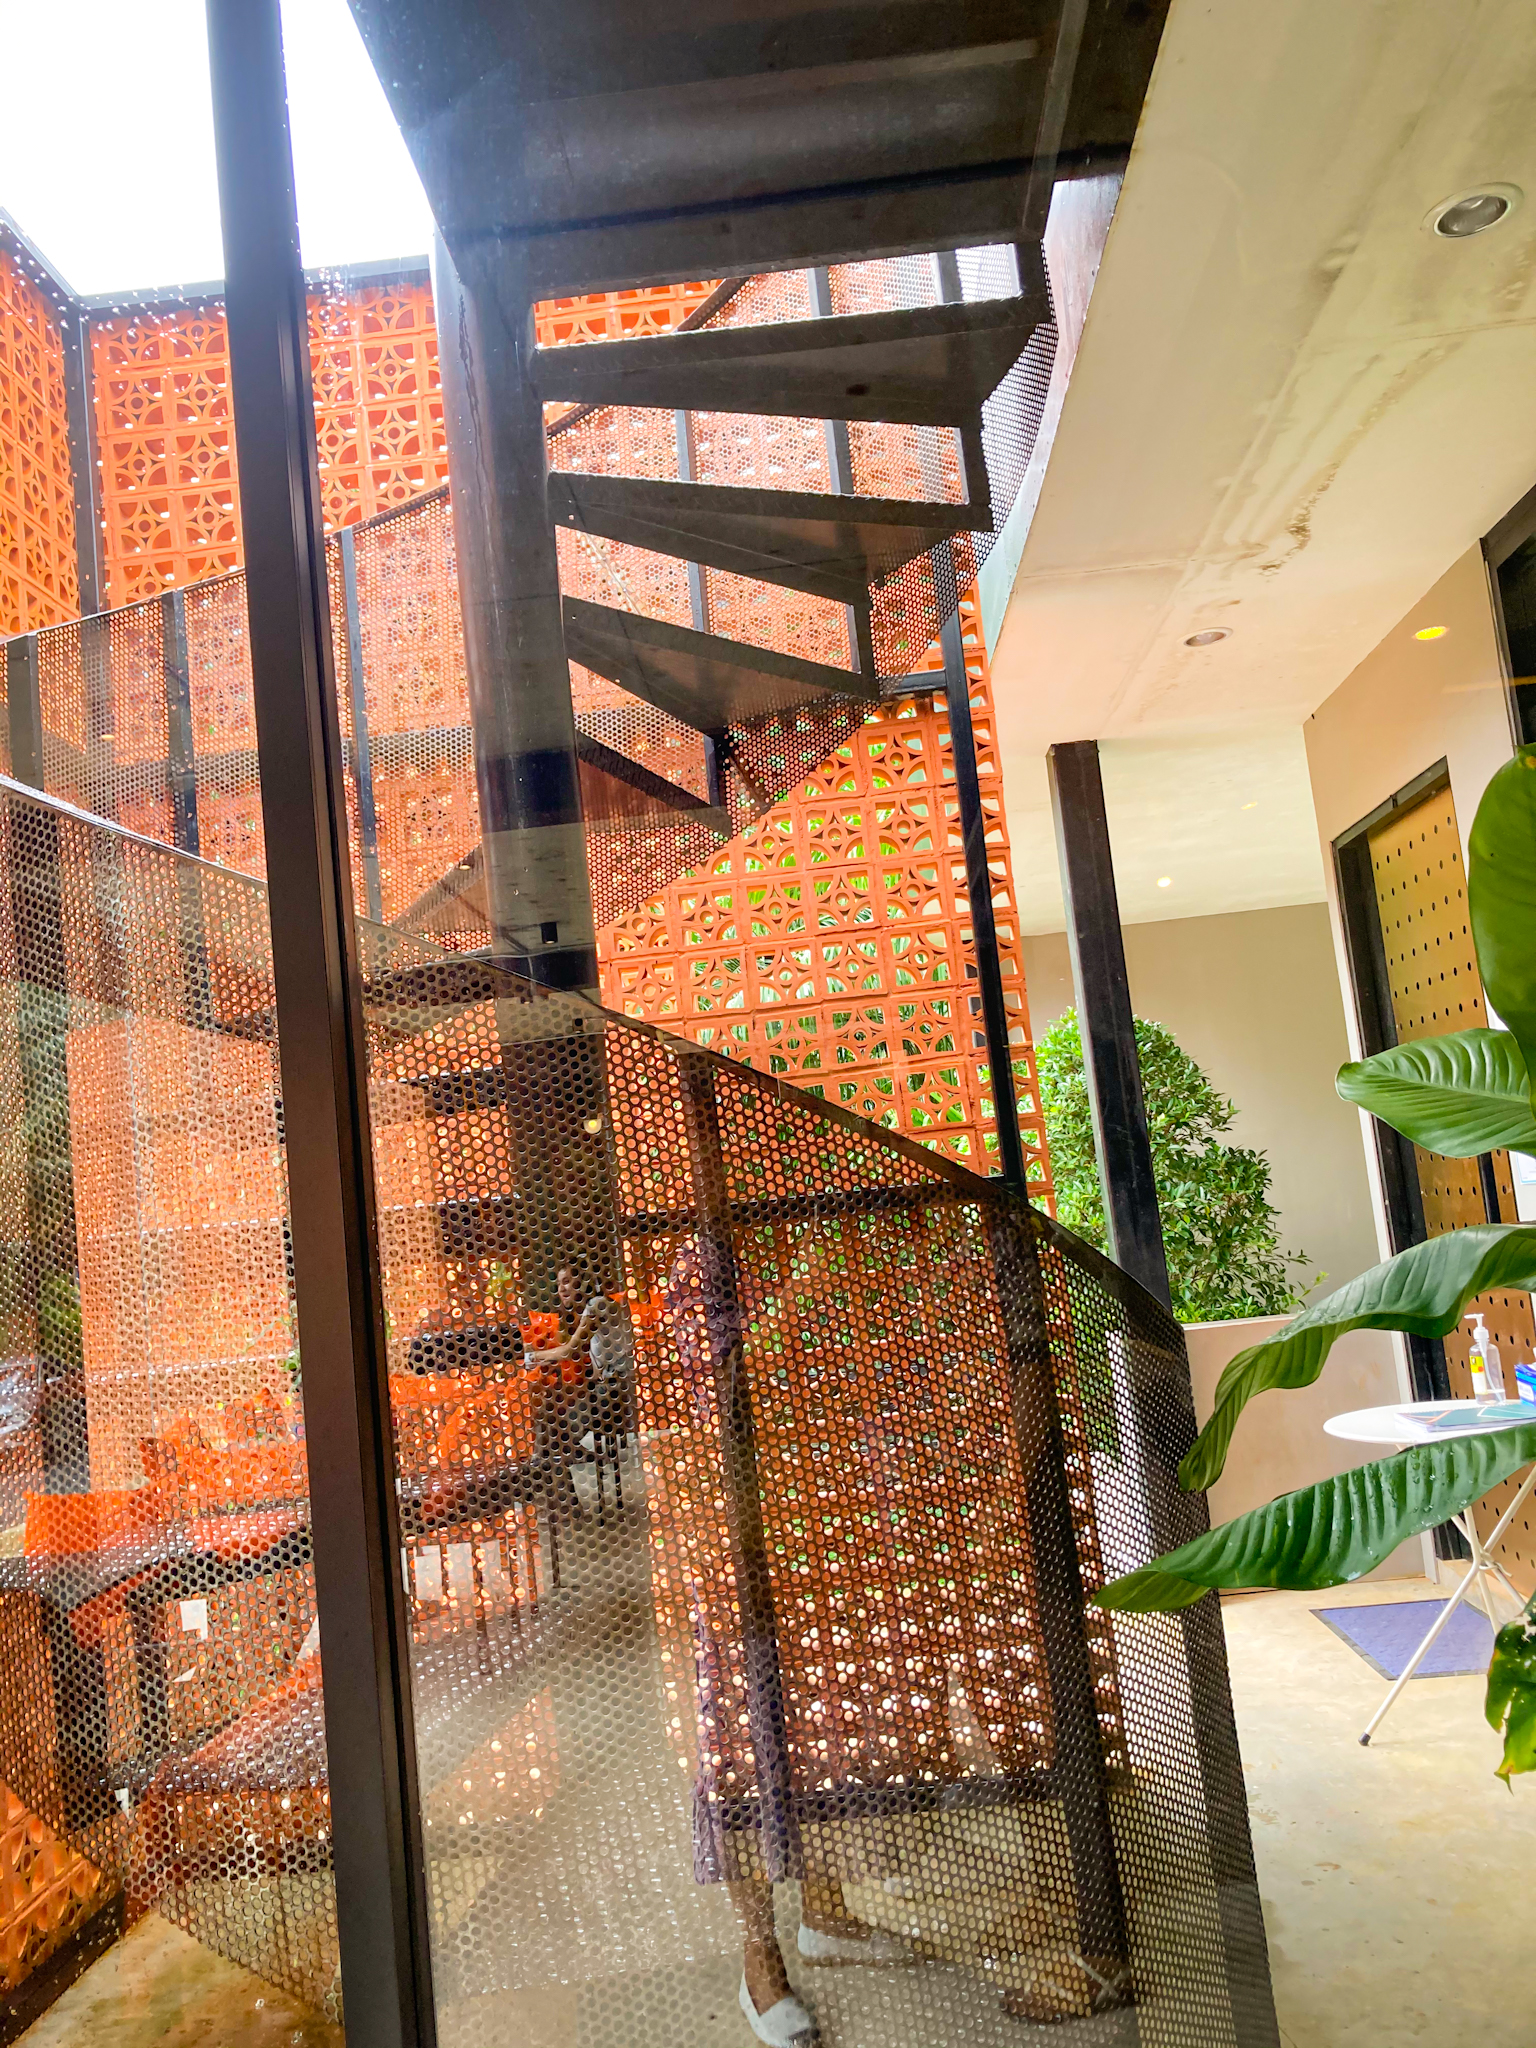 รูปภาพของ Sweet & Sour Krabi สวีท แอนด์ ซาว ค่าเฟ่อิฐสีส้มกลางหุบเขา